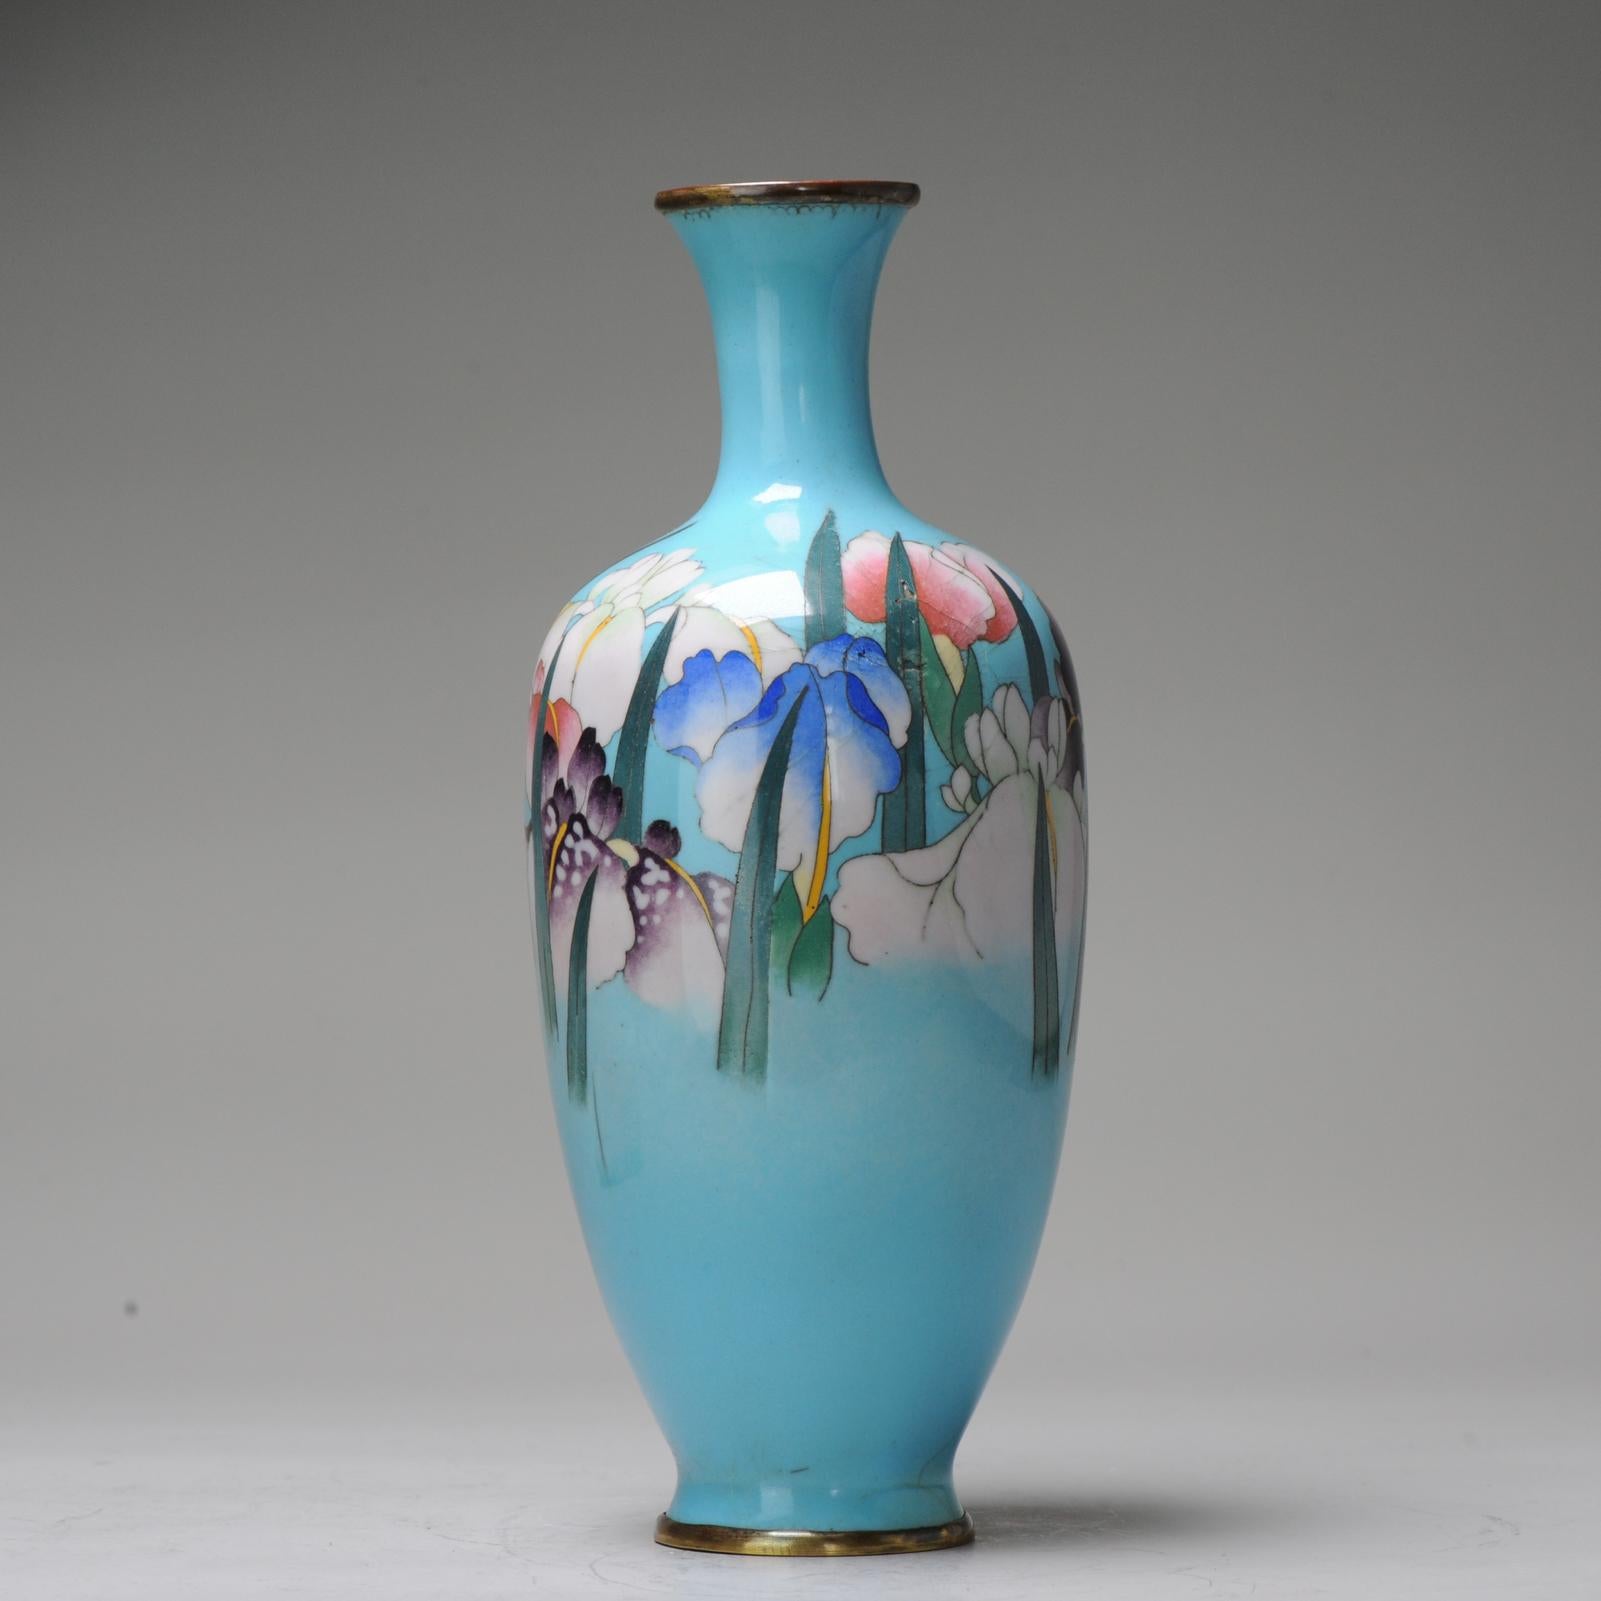 Beschreibung
Absolute Top-Qualität Vase mit herrlicher Dekoration der Blumen. Sockel mit Flammenperle markiert: Gonda Hirosuki. Mit passender Schachtel.

Referenz: Siehe ähnliche Objekte dieses berühmten Künstlers, die bei Bonhams und Christie's